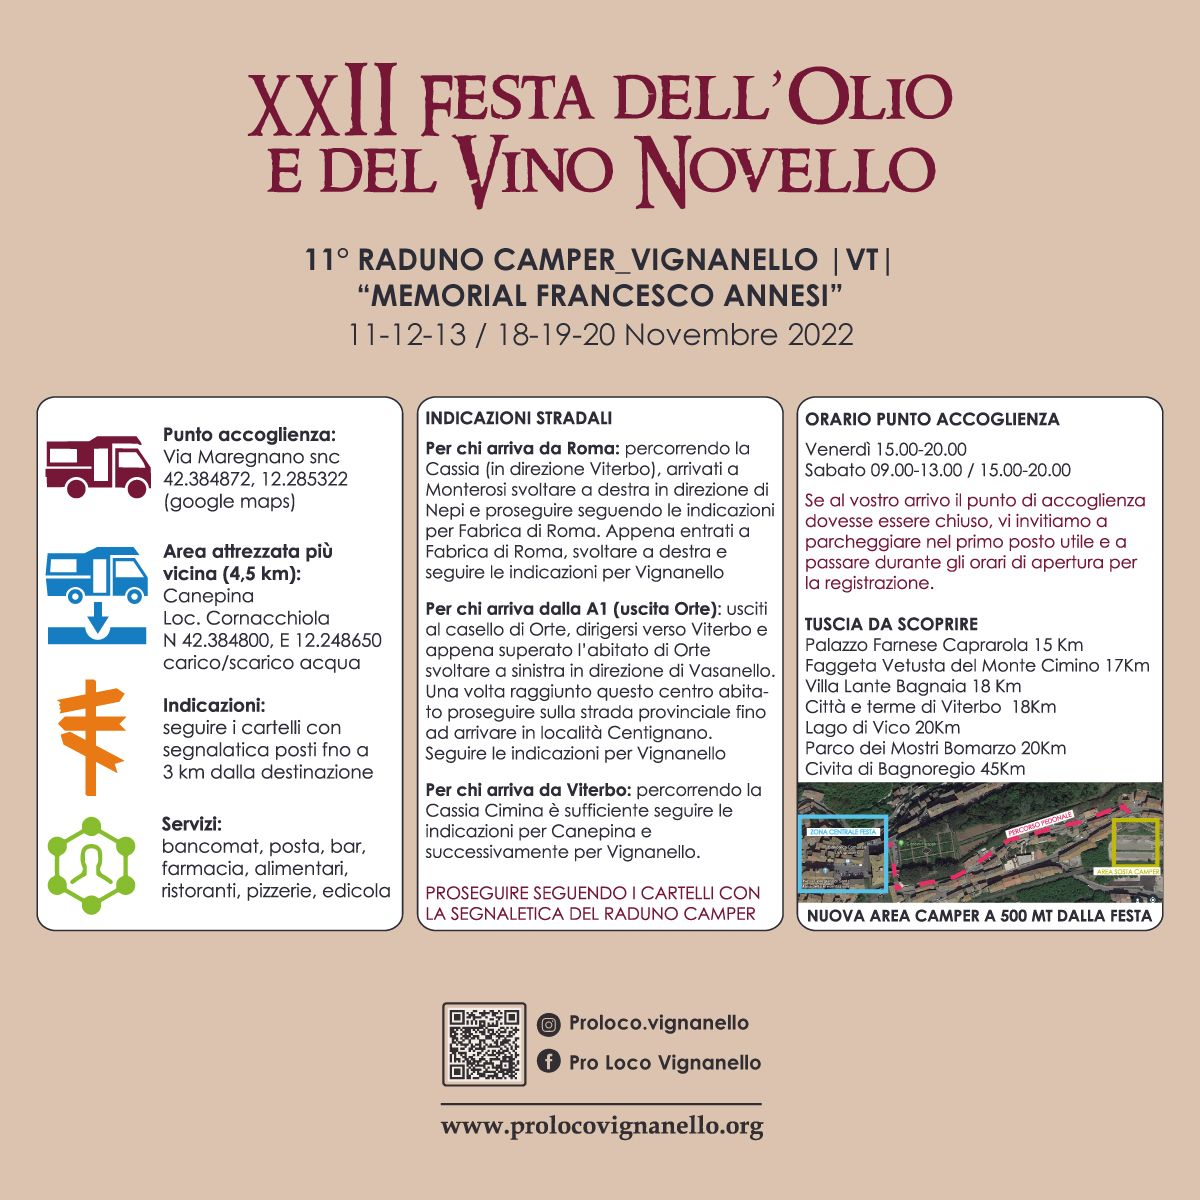 XXII Festa dell'oio e del vino novello Viganello